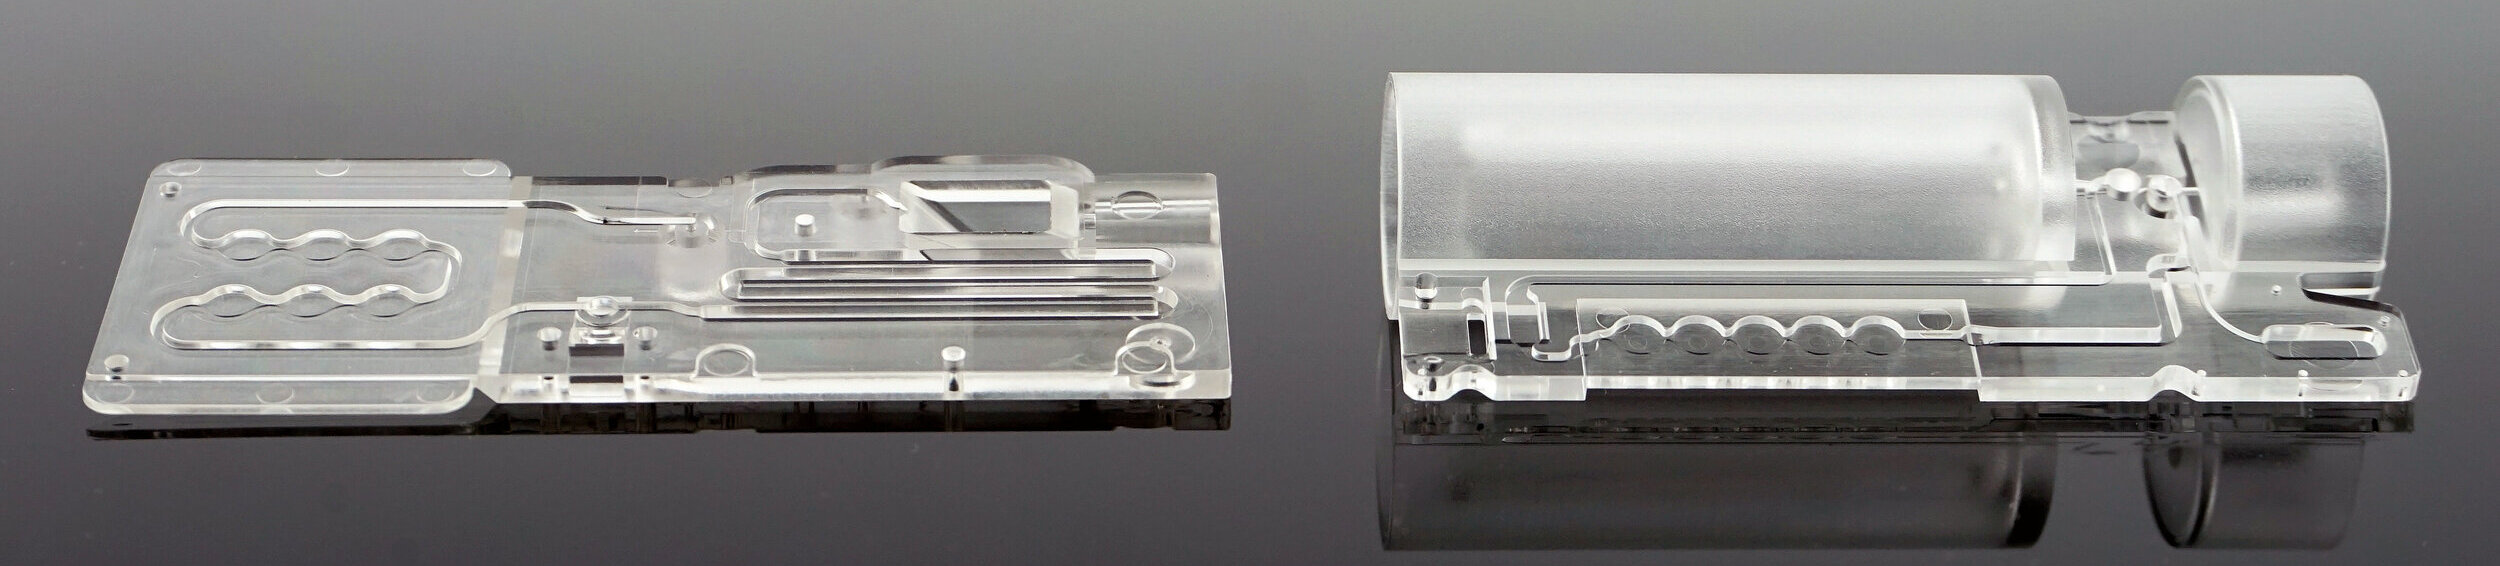 mikrofluidische Bio-Chips (Lab-on-a-Chip) gefertigt im Spritzguss - KUZ